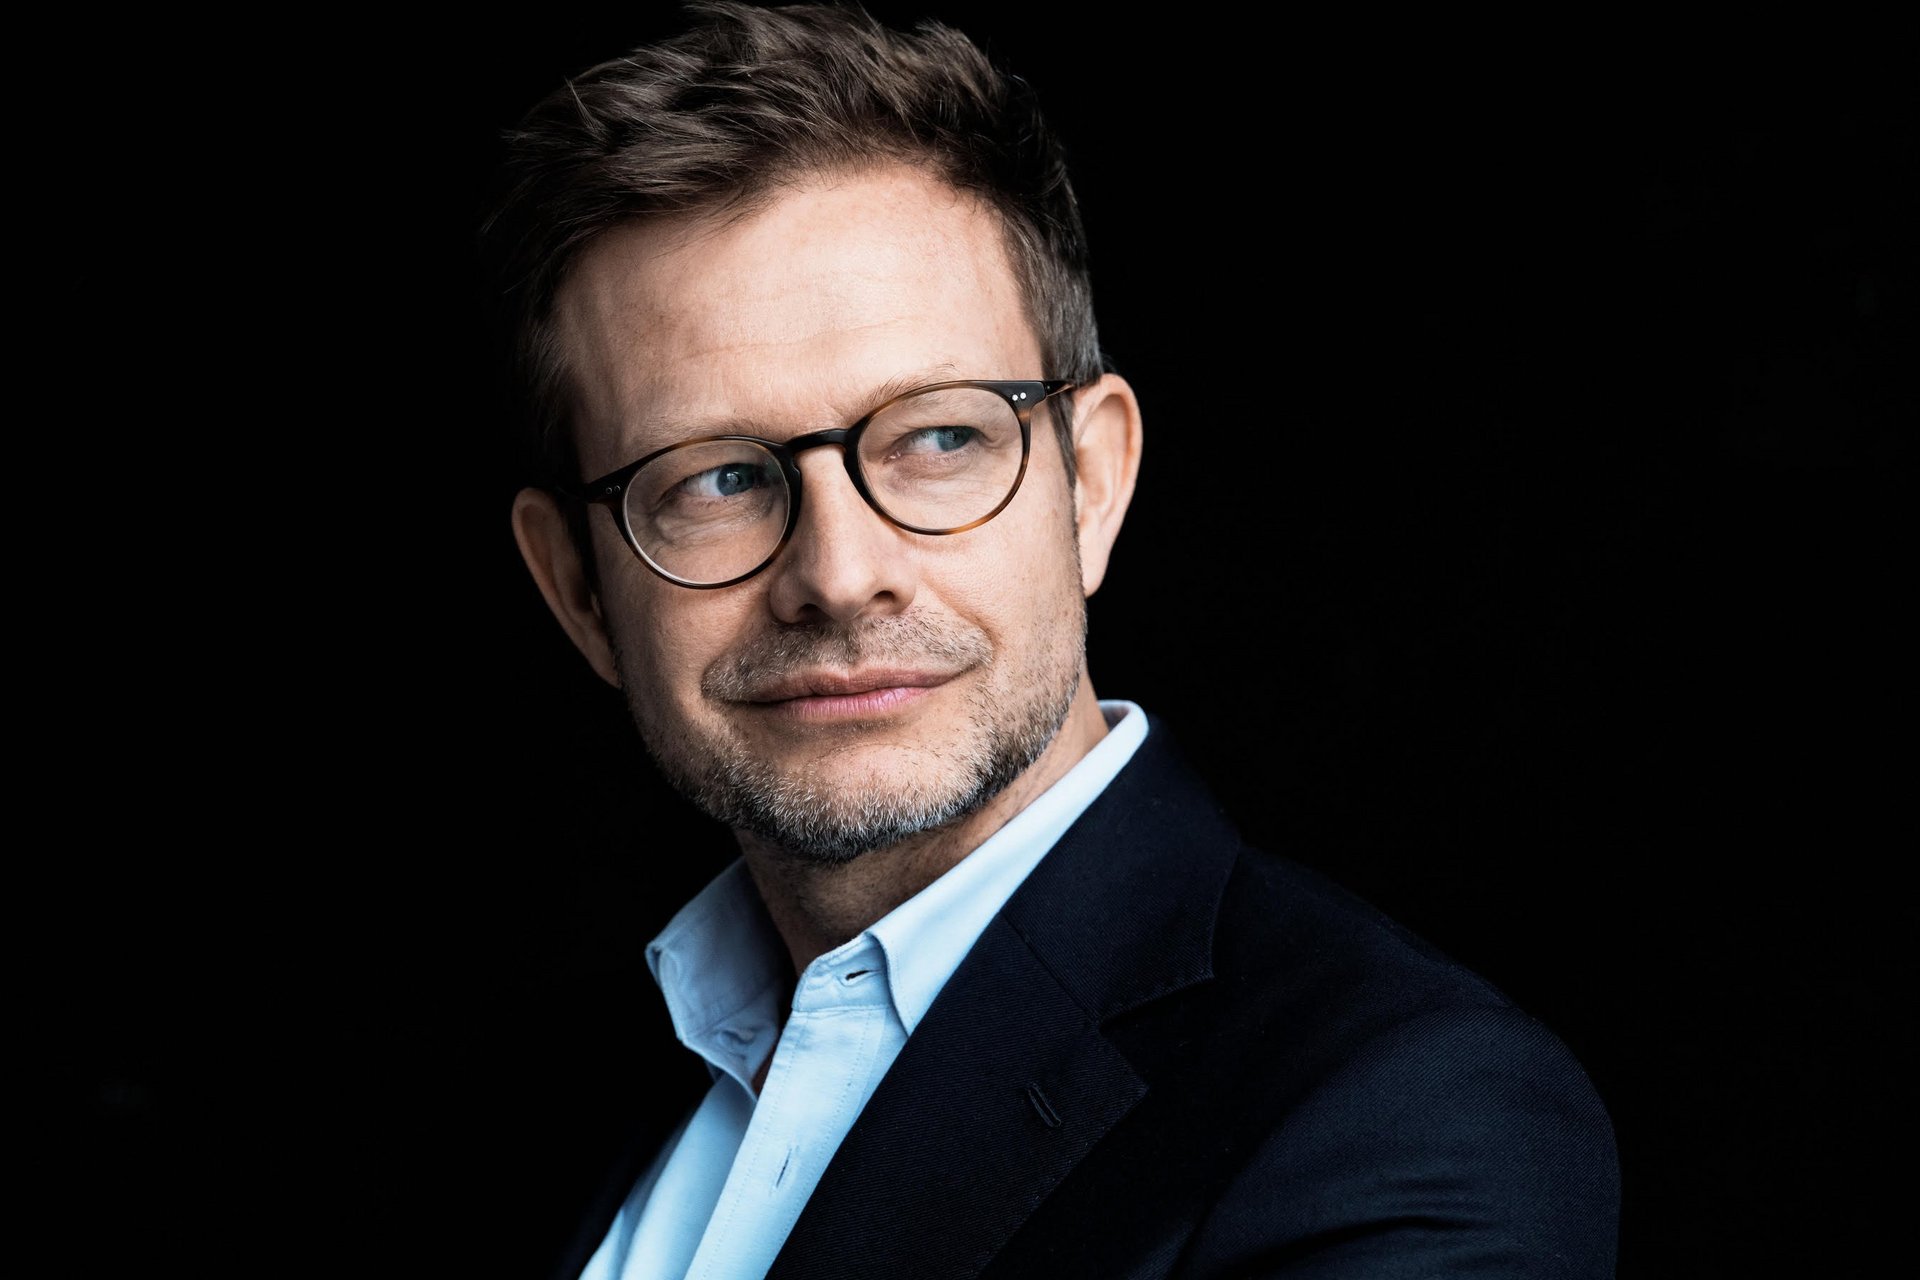 Portraitfoto: Mann mit Brille und dunkelblauem Anzug nach links gewendet, schaut nach rechts vor schwarzem Hintergrund.